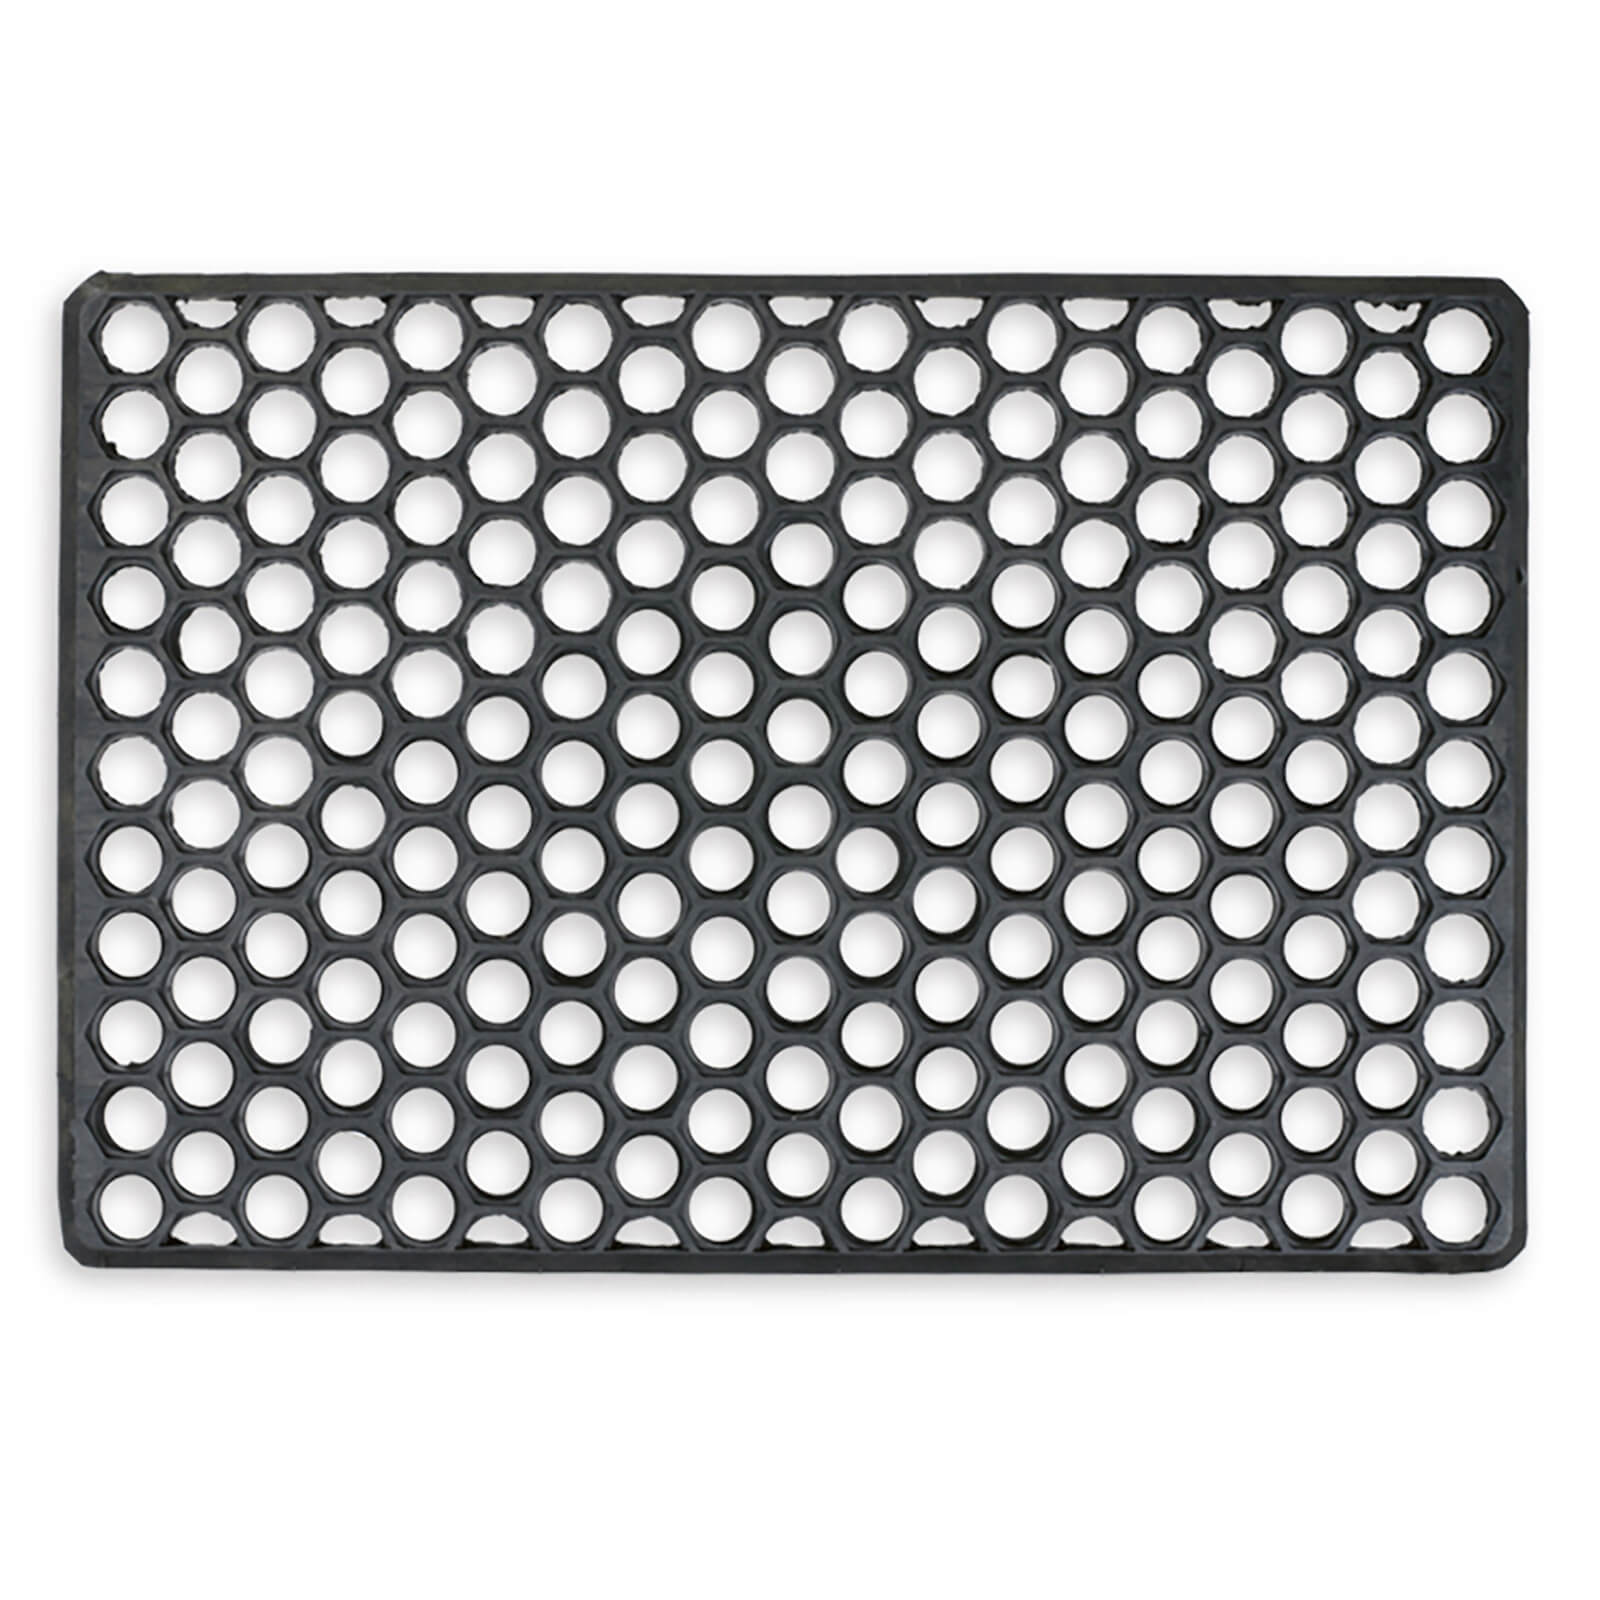 Rubber Grid Doormat Black - 40 x 60cm